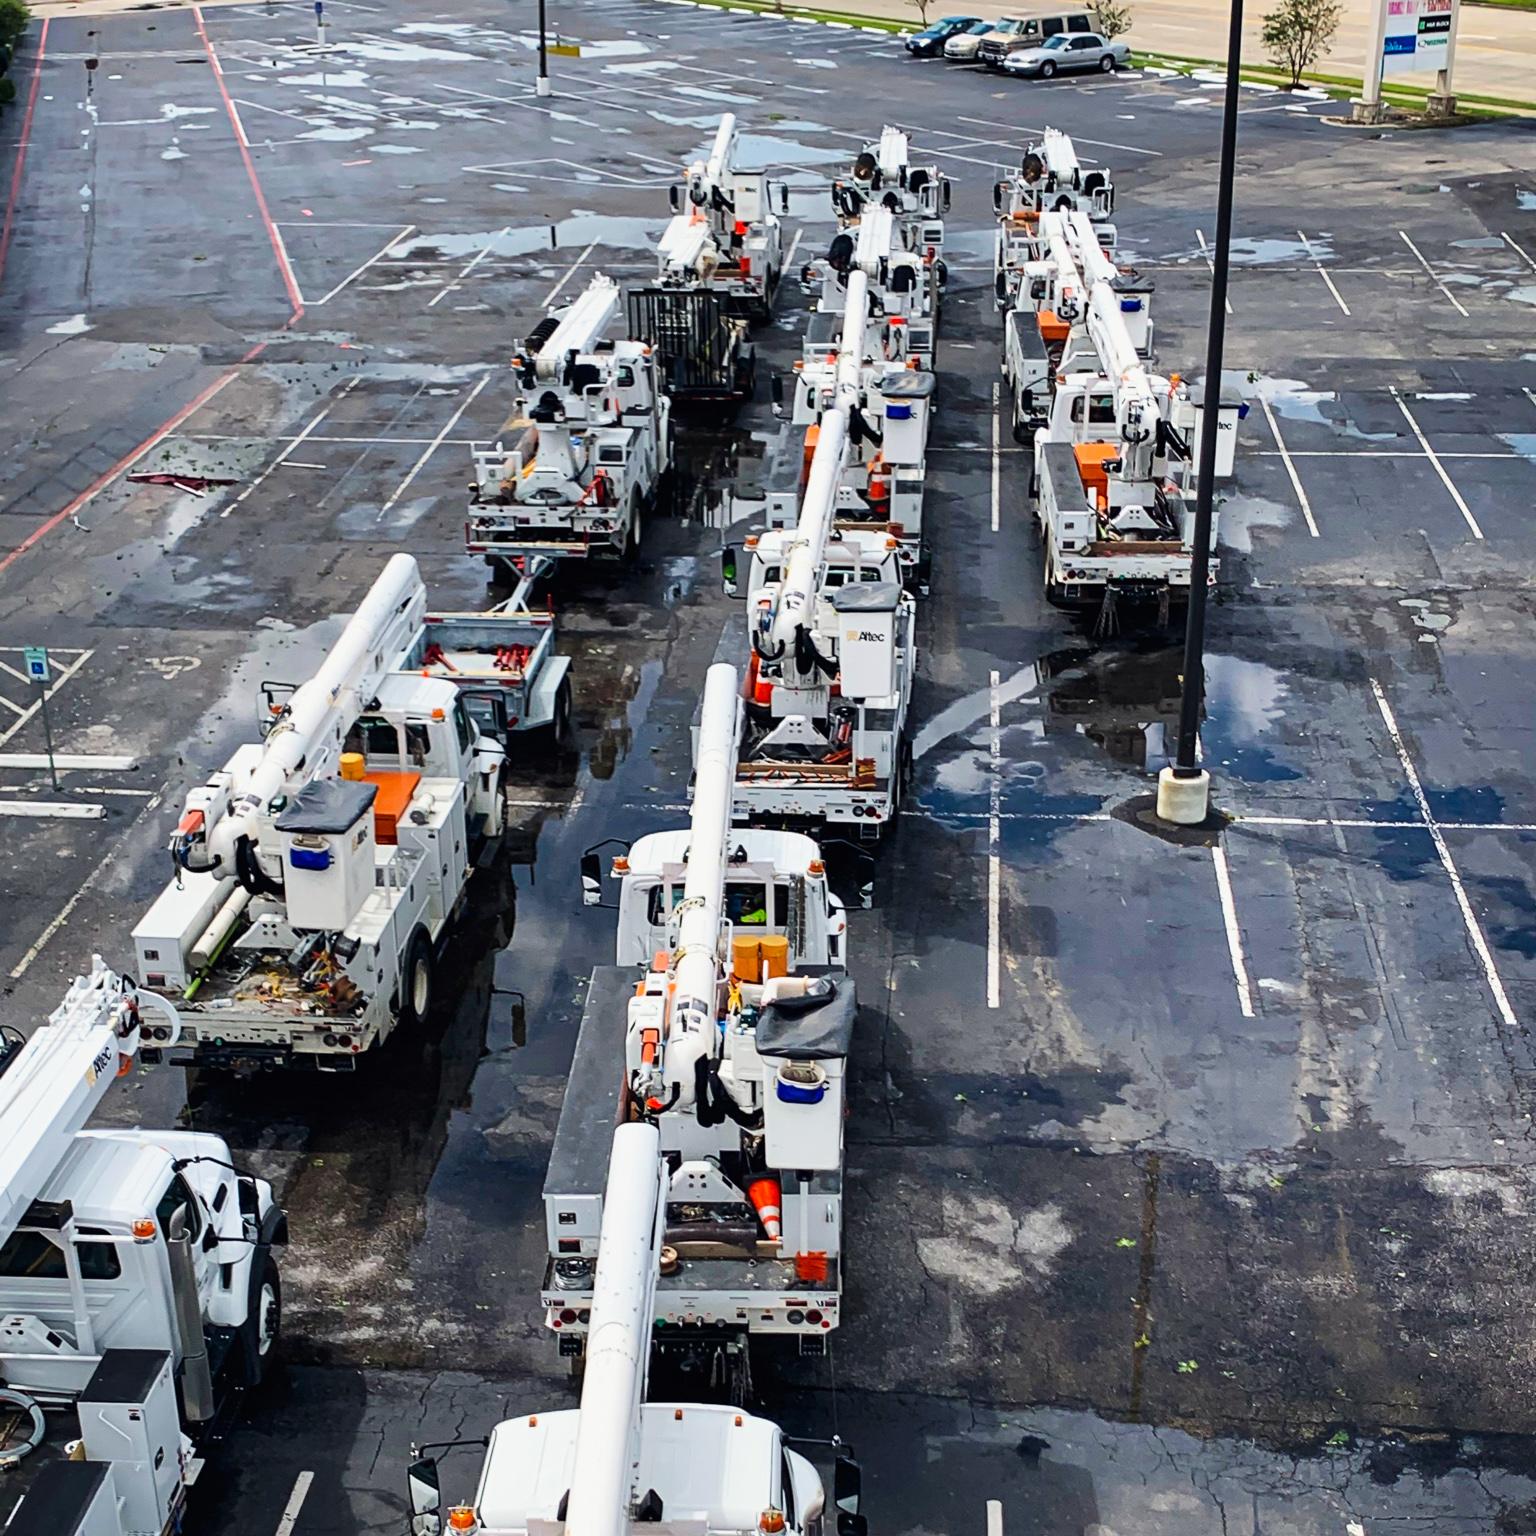 Fleet of white bucket trucks in a parking lot